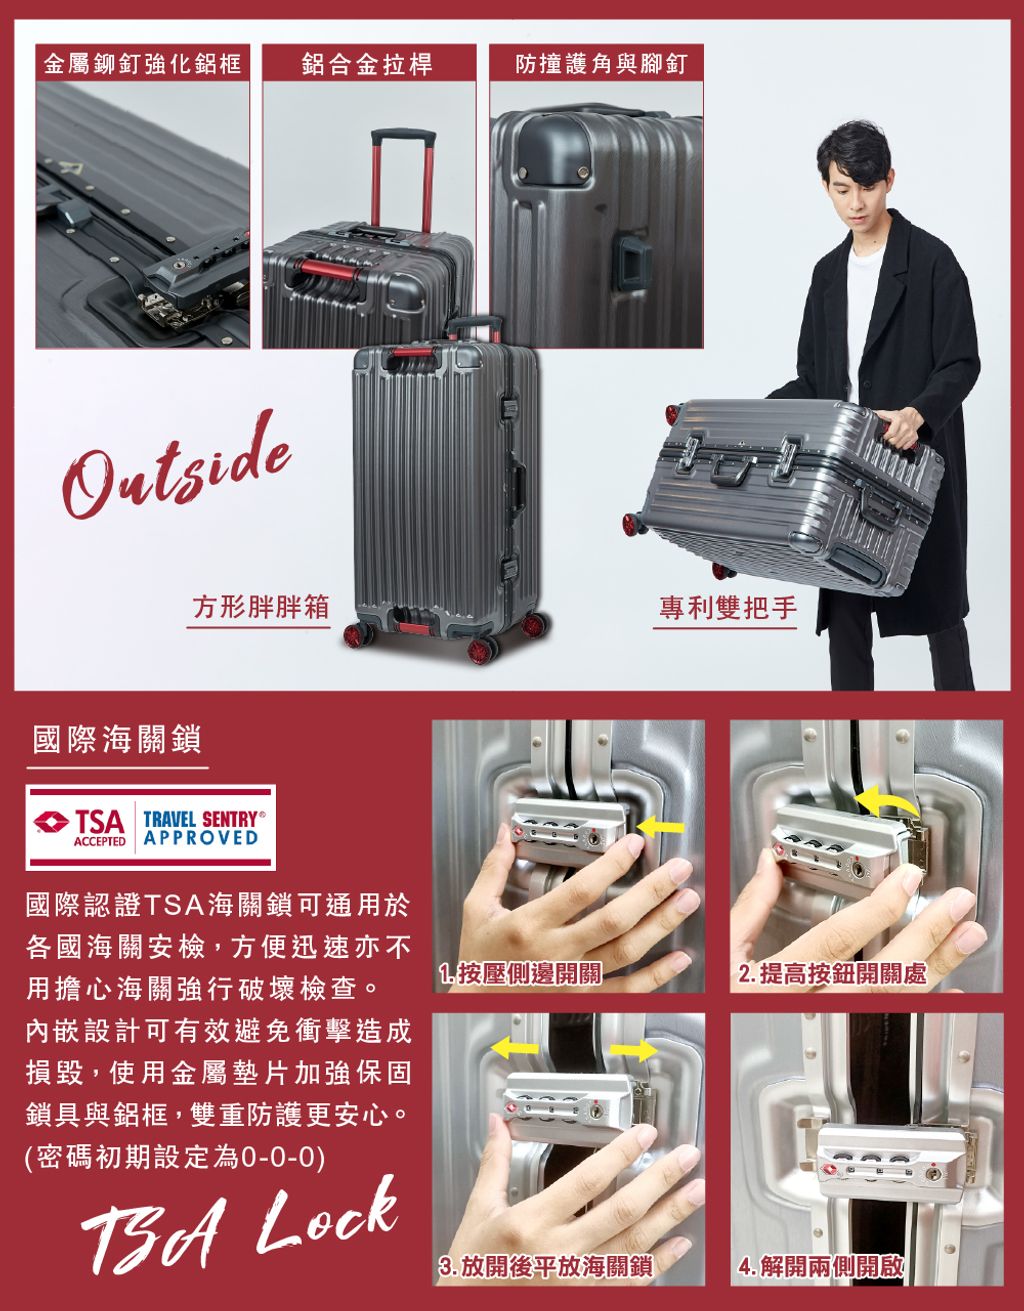 gripmaster-luggage-gm-1102-27-P2.jpg